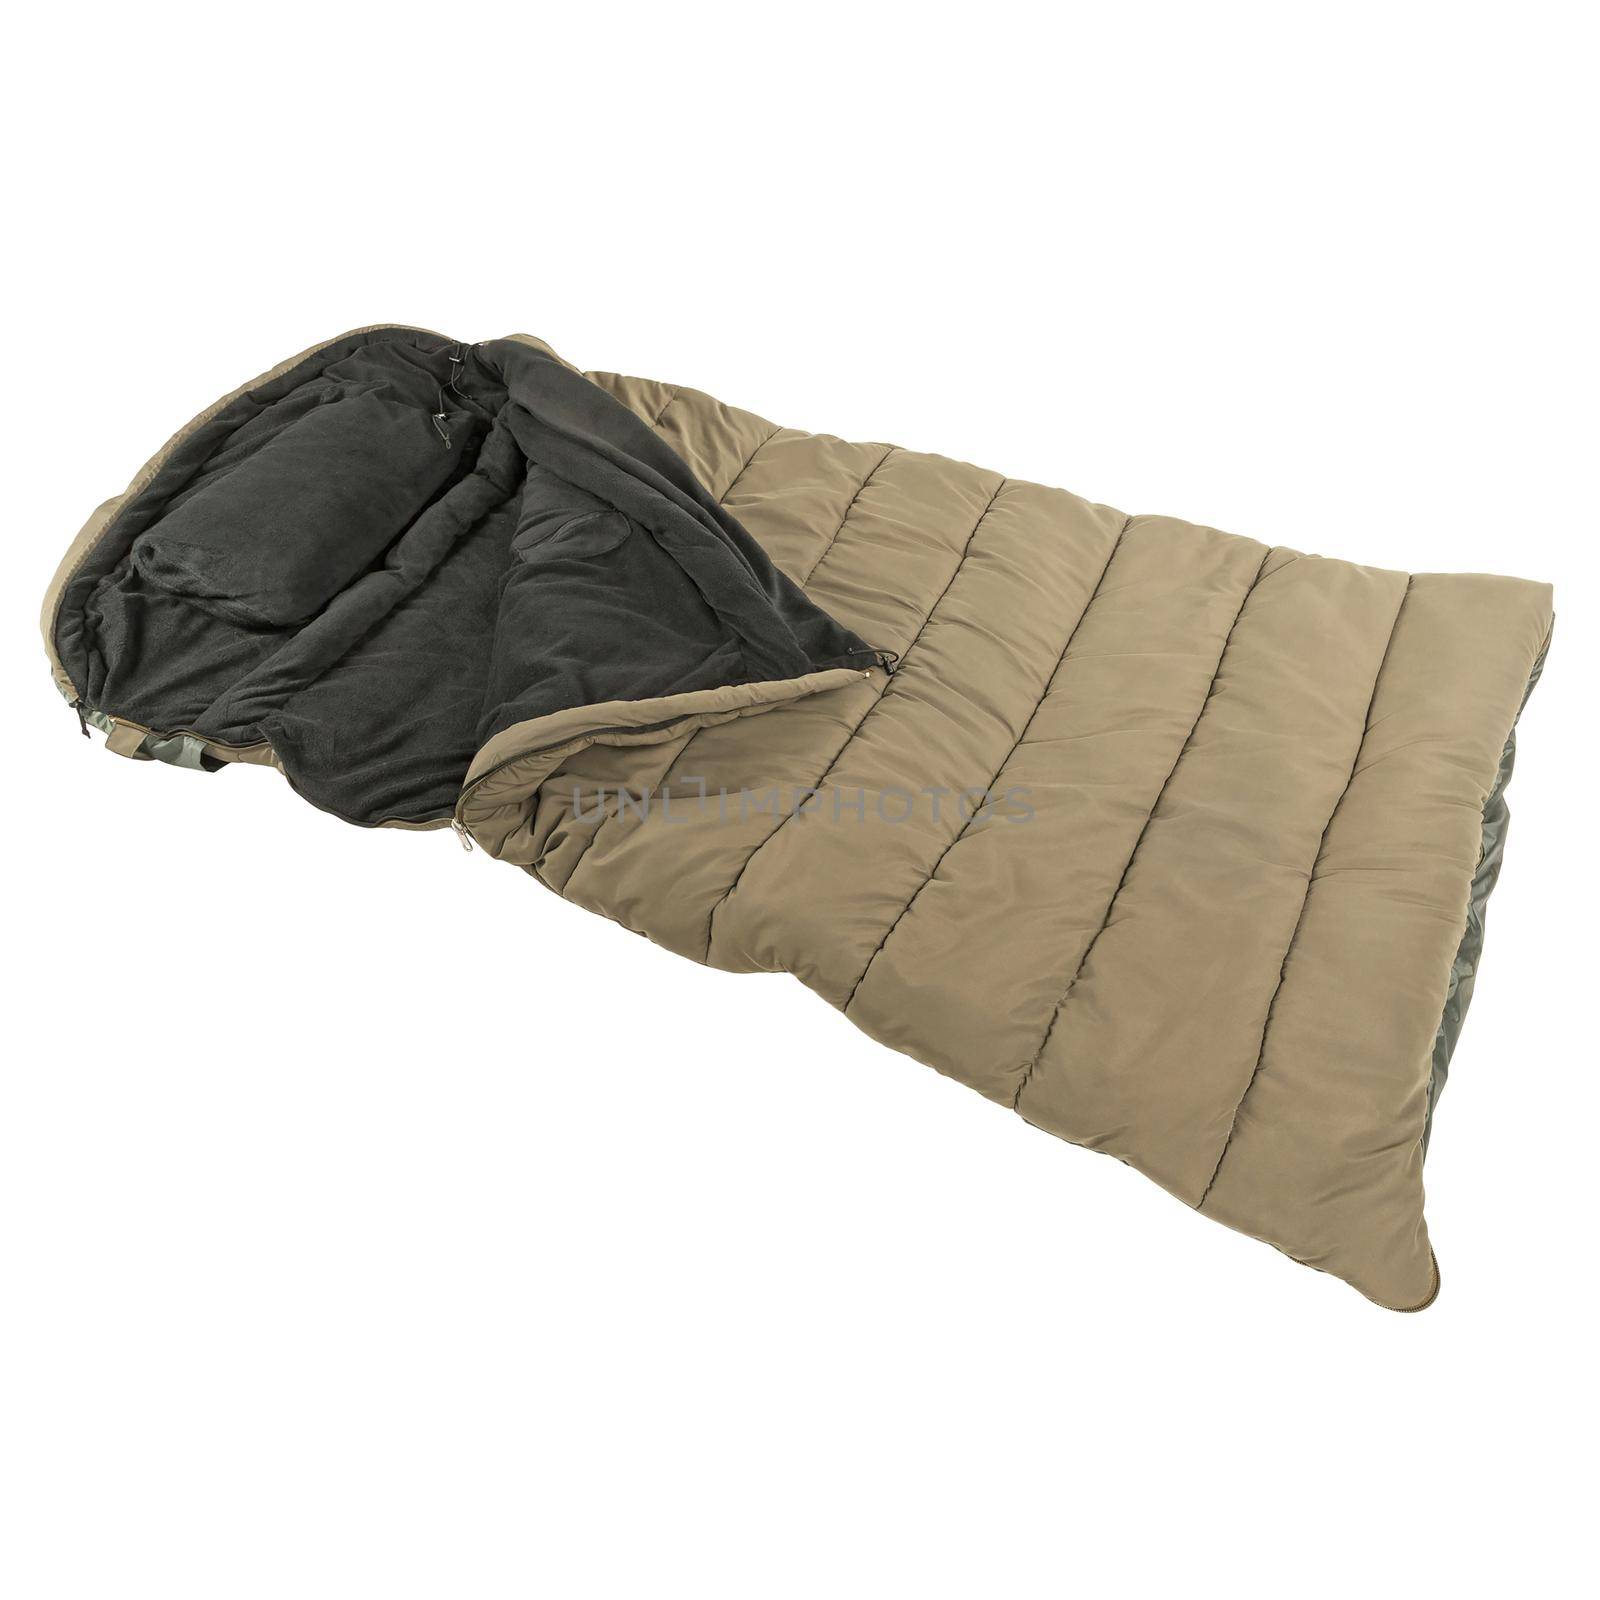 Warm sleeping bag isolated on white baground